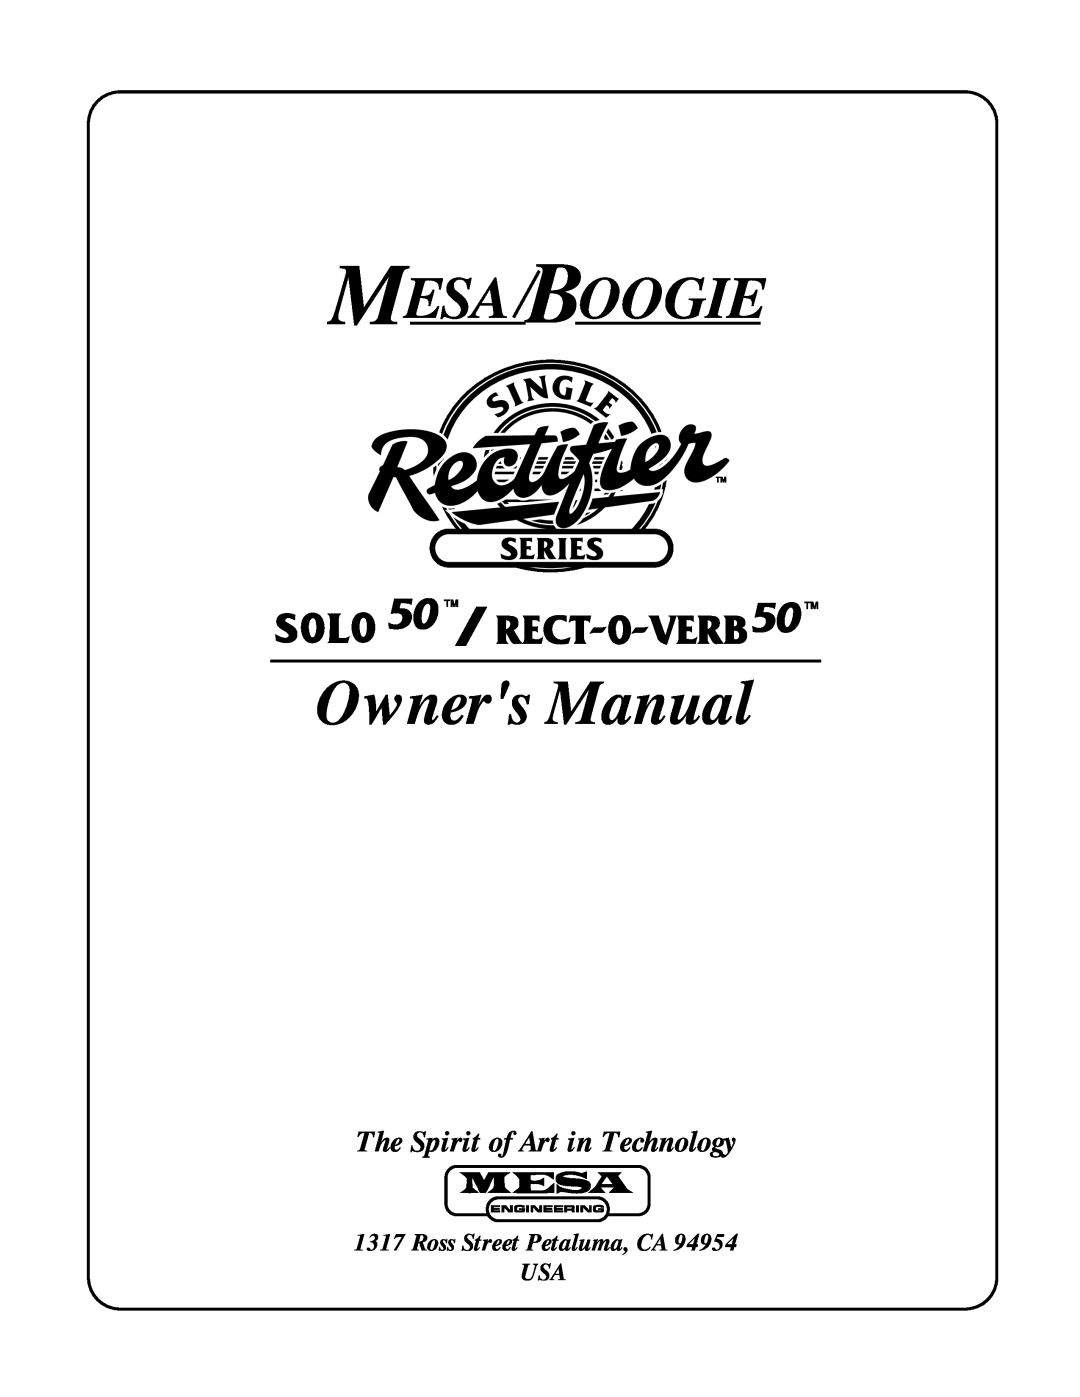 Mesa/Boogie RECT-O-VERB 50 owner manual The Spirit of Art in Technology, Ross Street Petaluma, CA USA, Mesa Boogie 